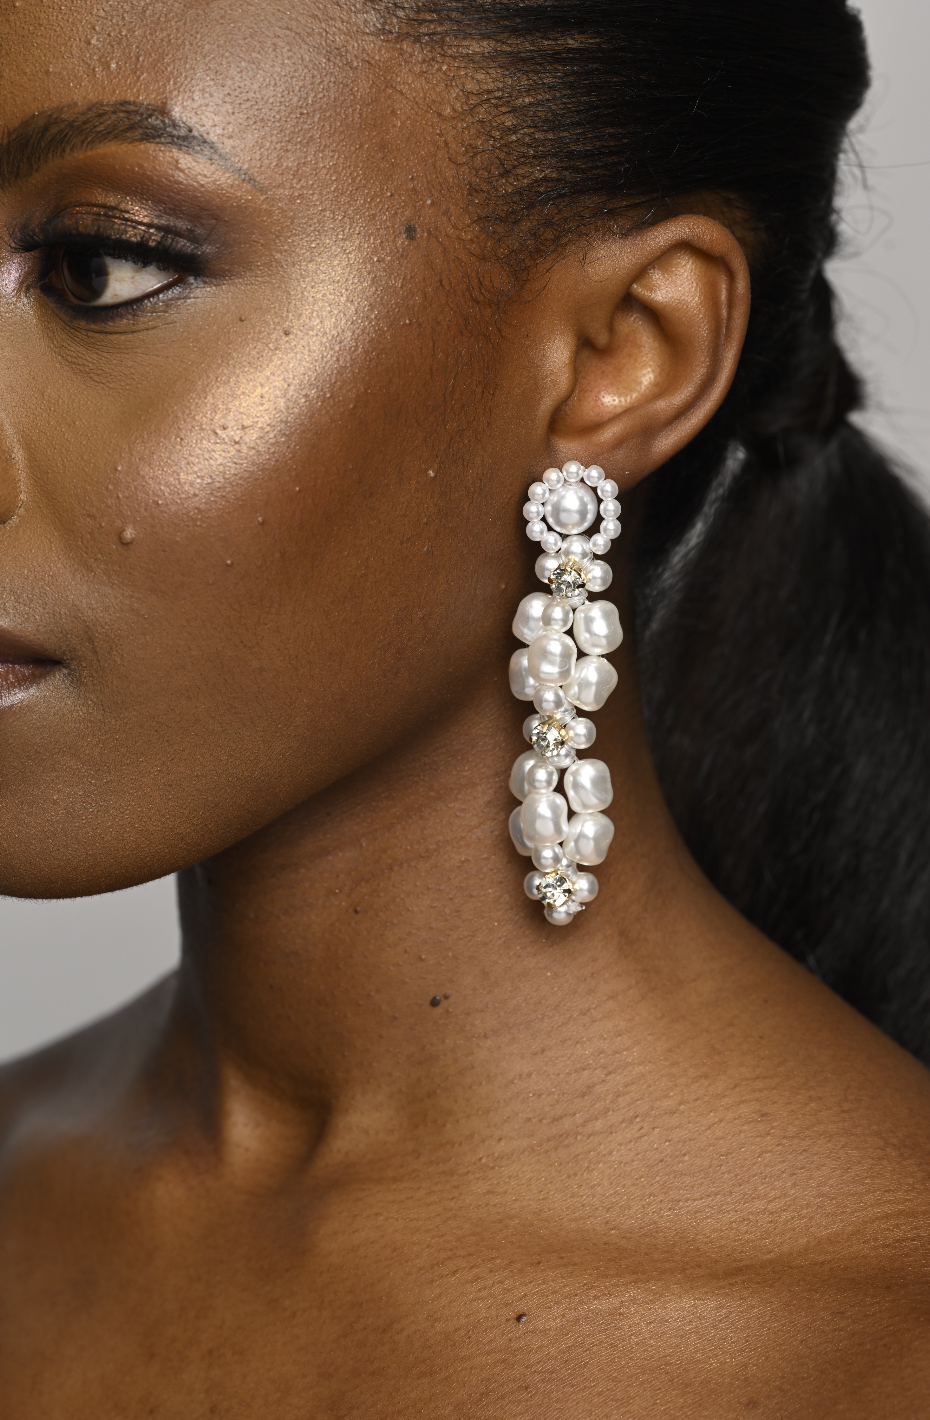 Long Elegant Faux Pearls Stud Earrings